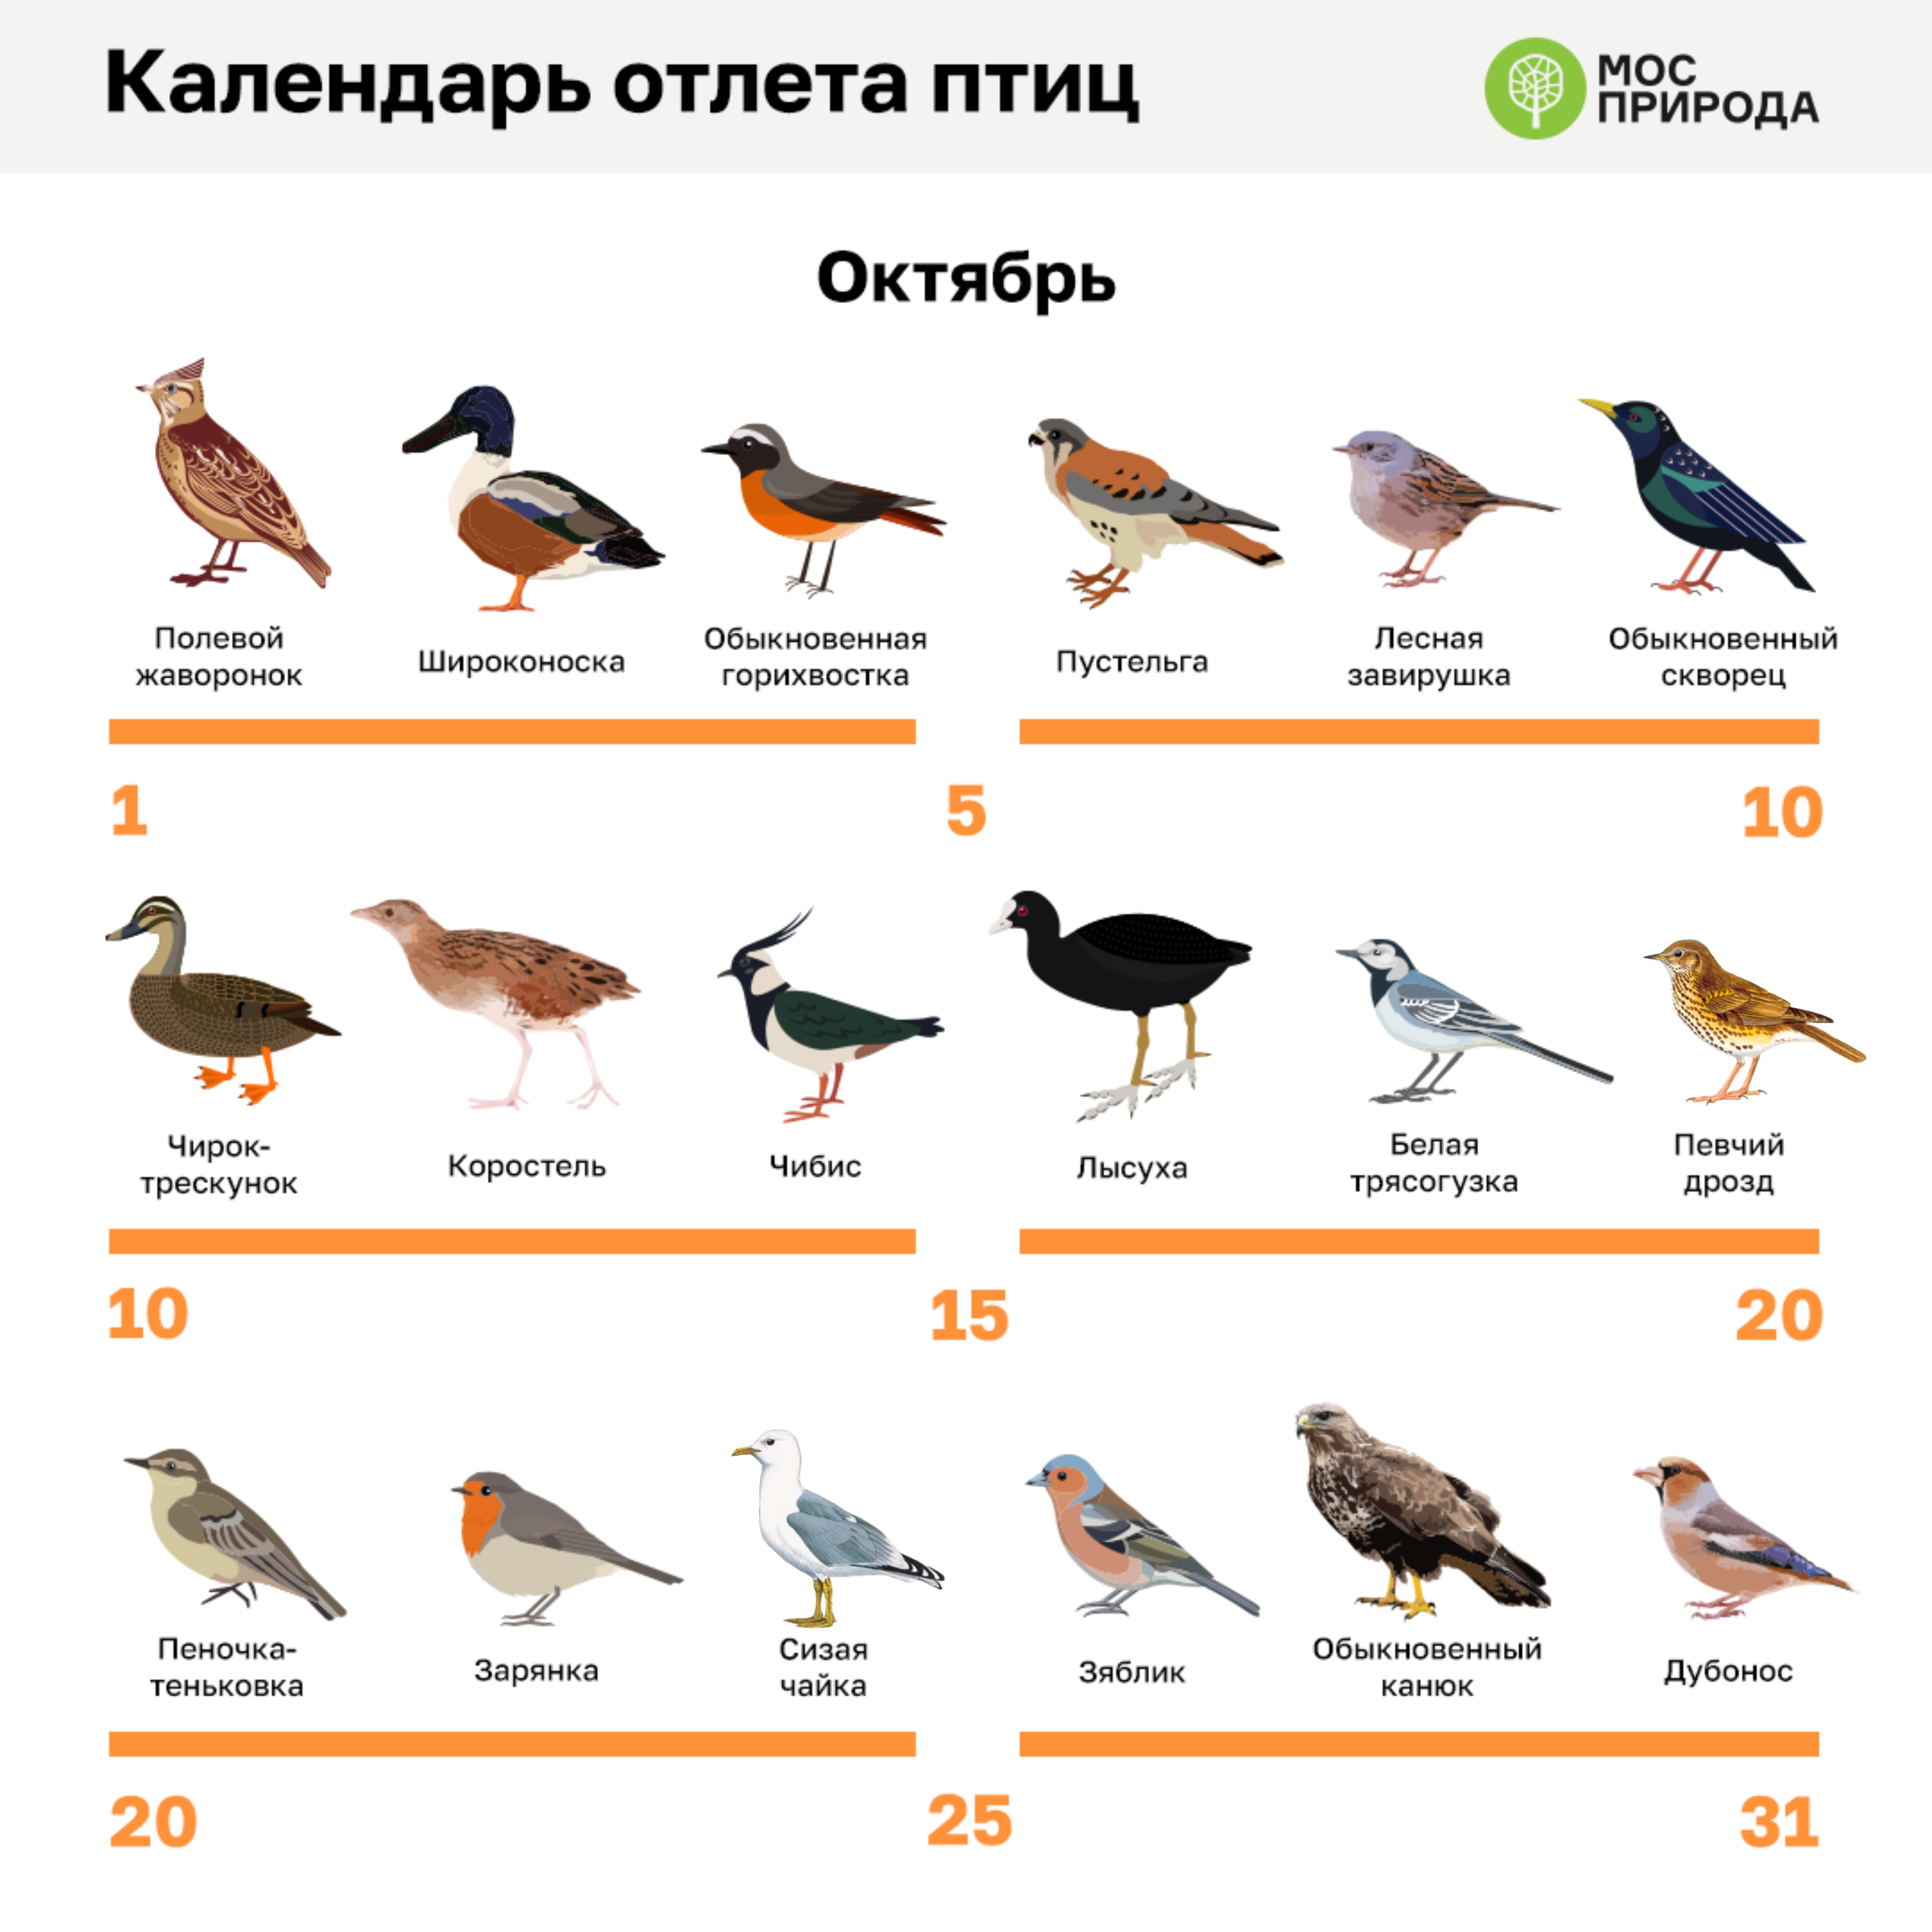 Фото и описание птиц Подмосковья